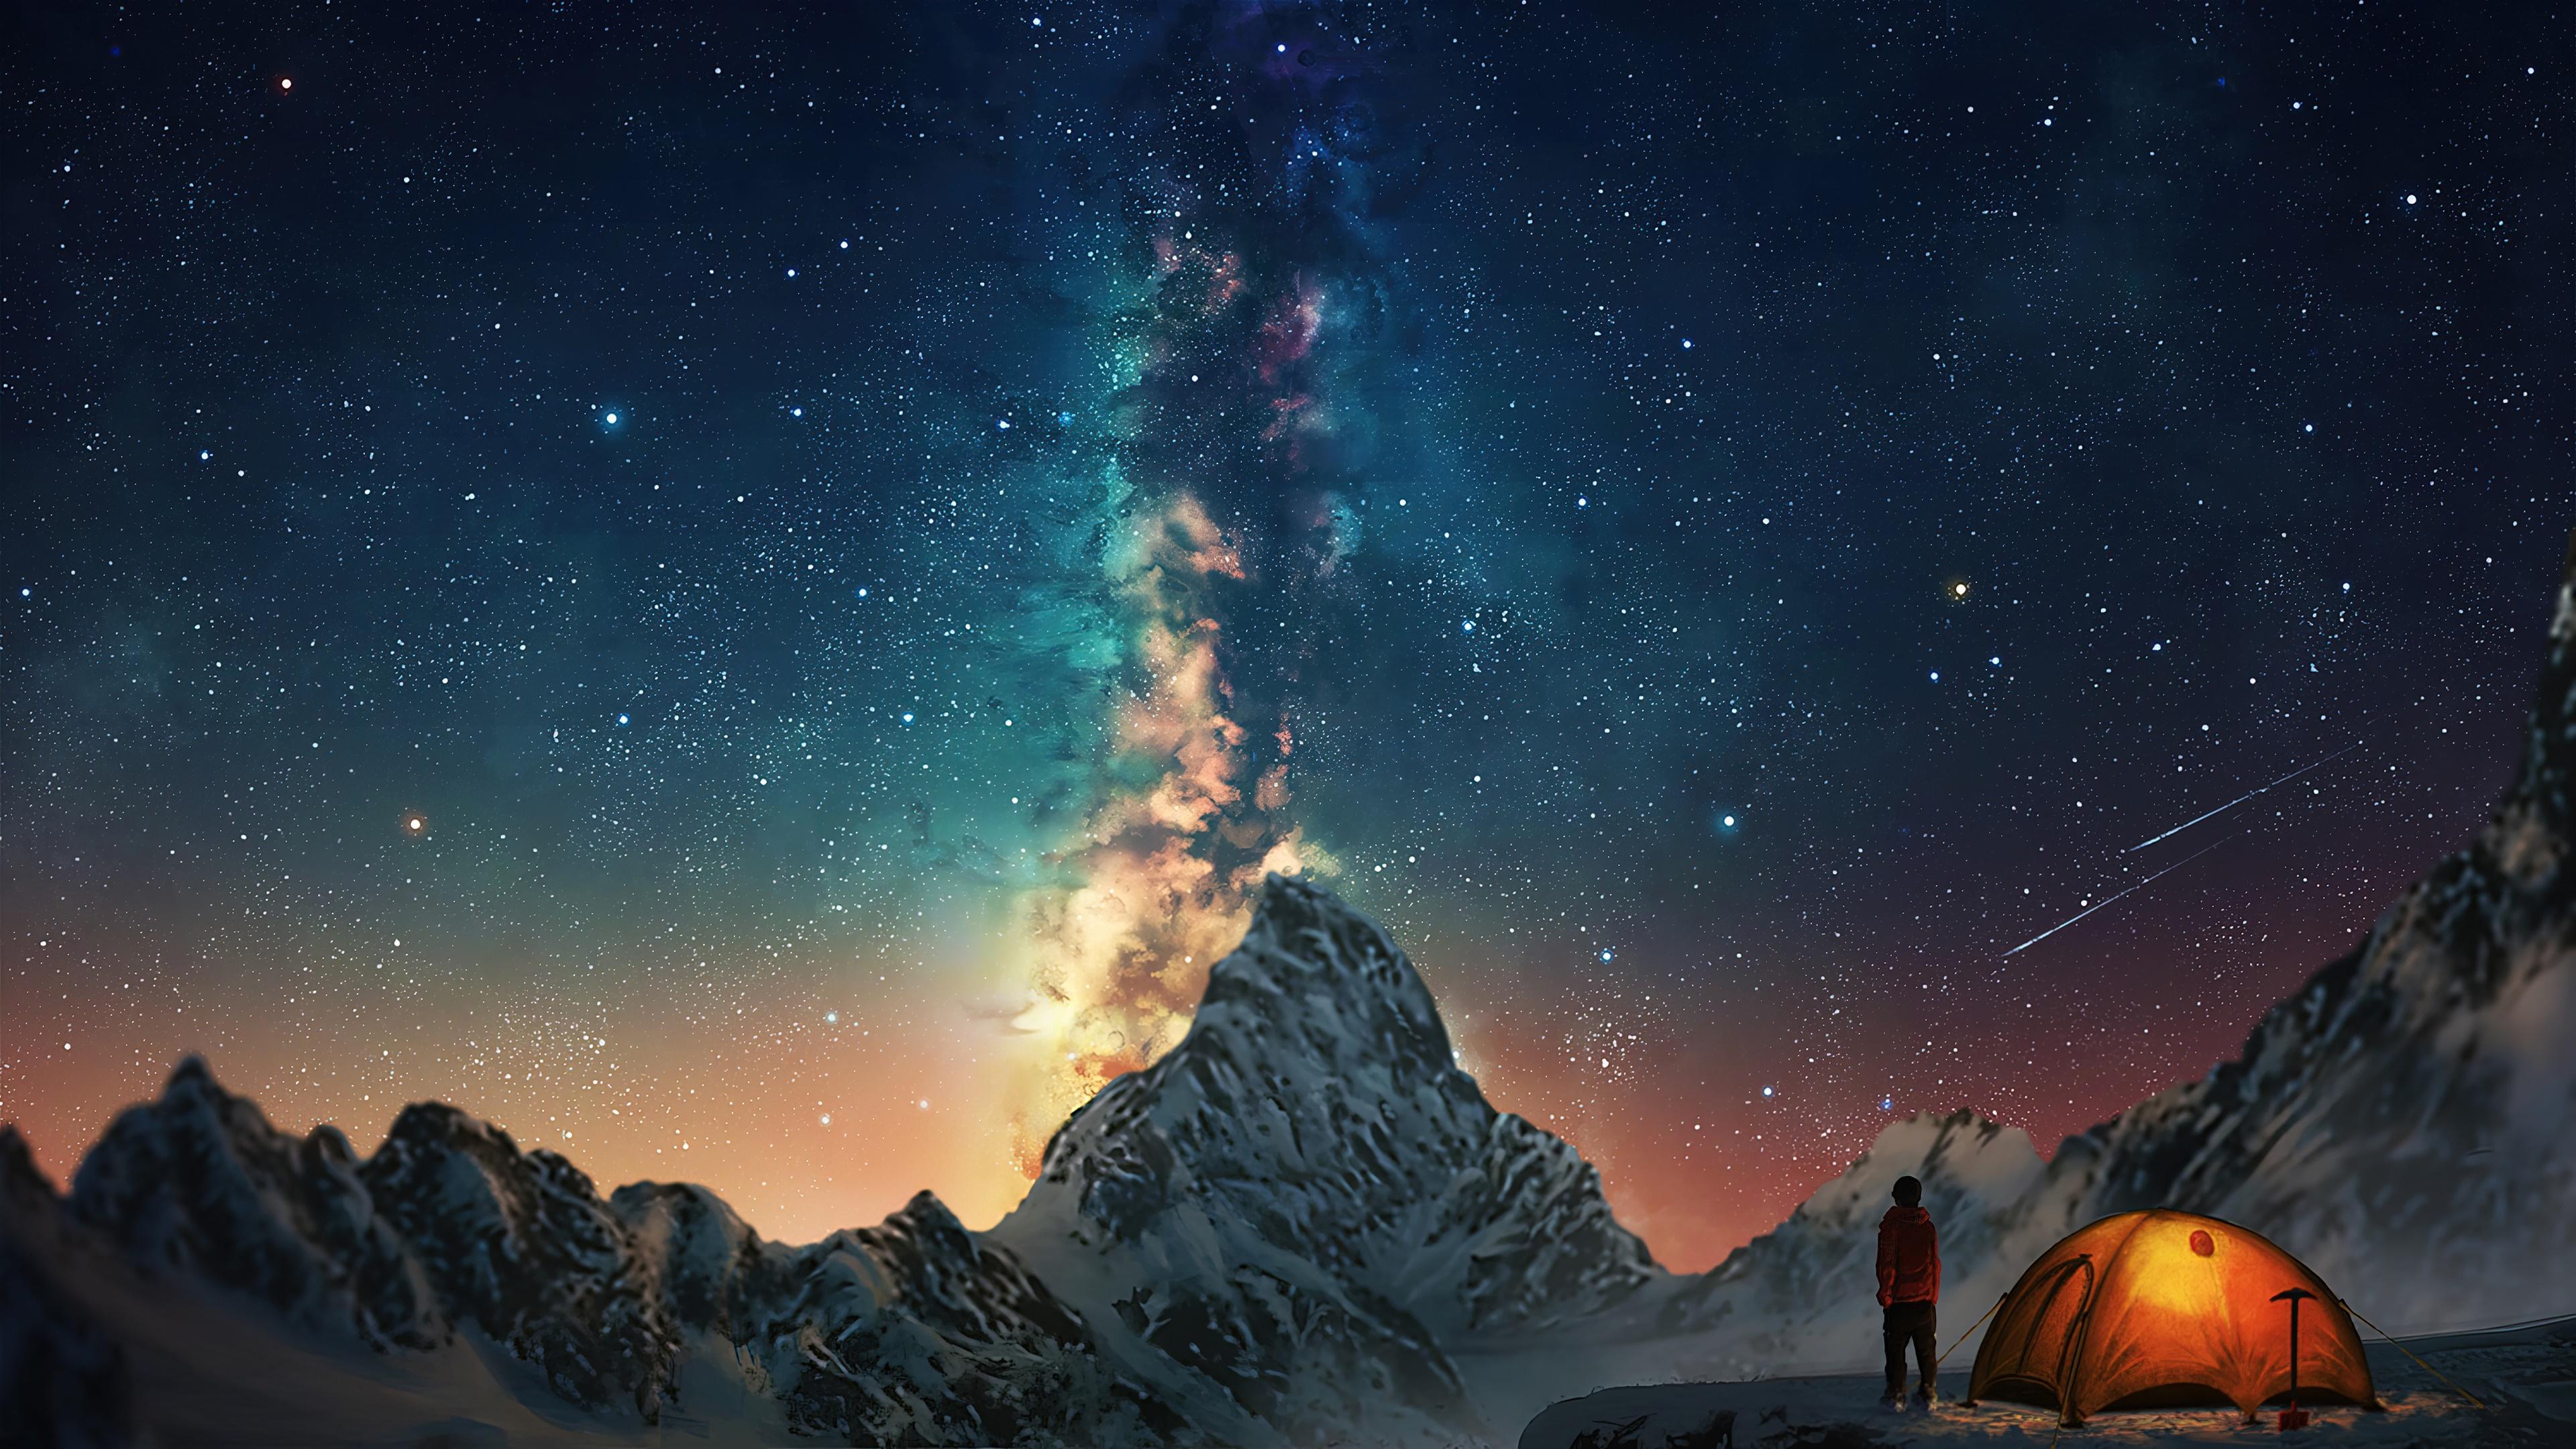 HD wallpaper, Sky, Night, Nebula, Camping, 4K, Mountain, Stars, Scenery